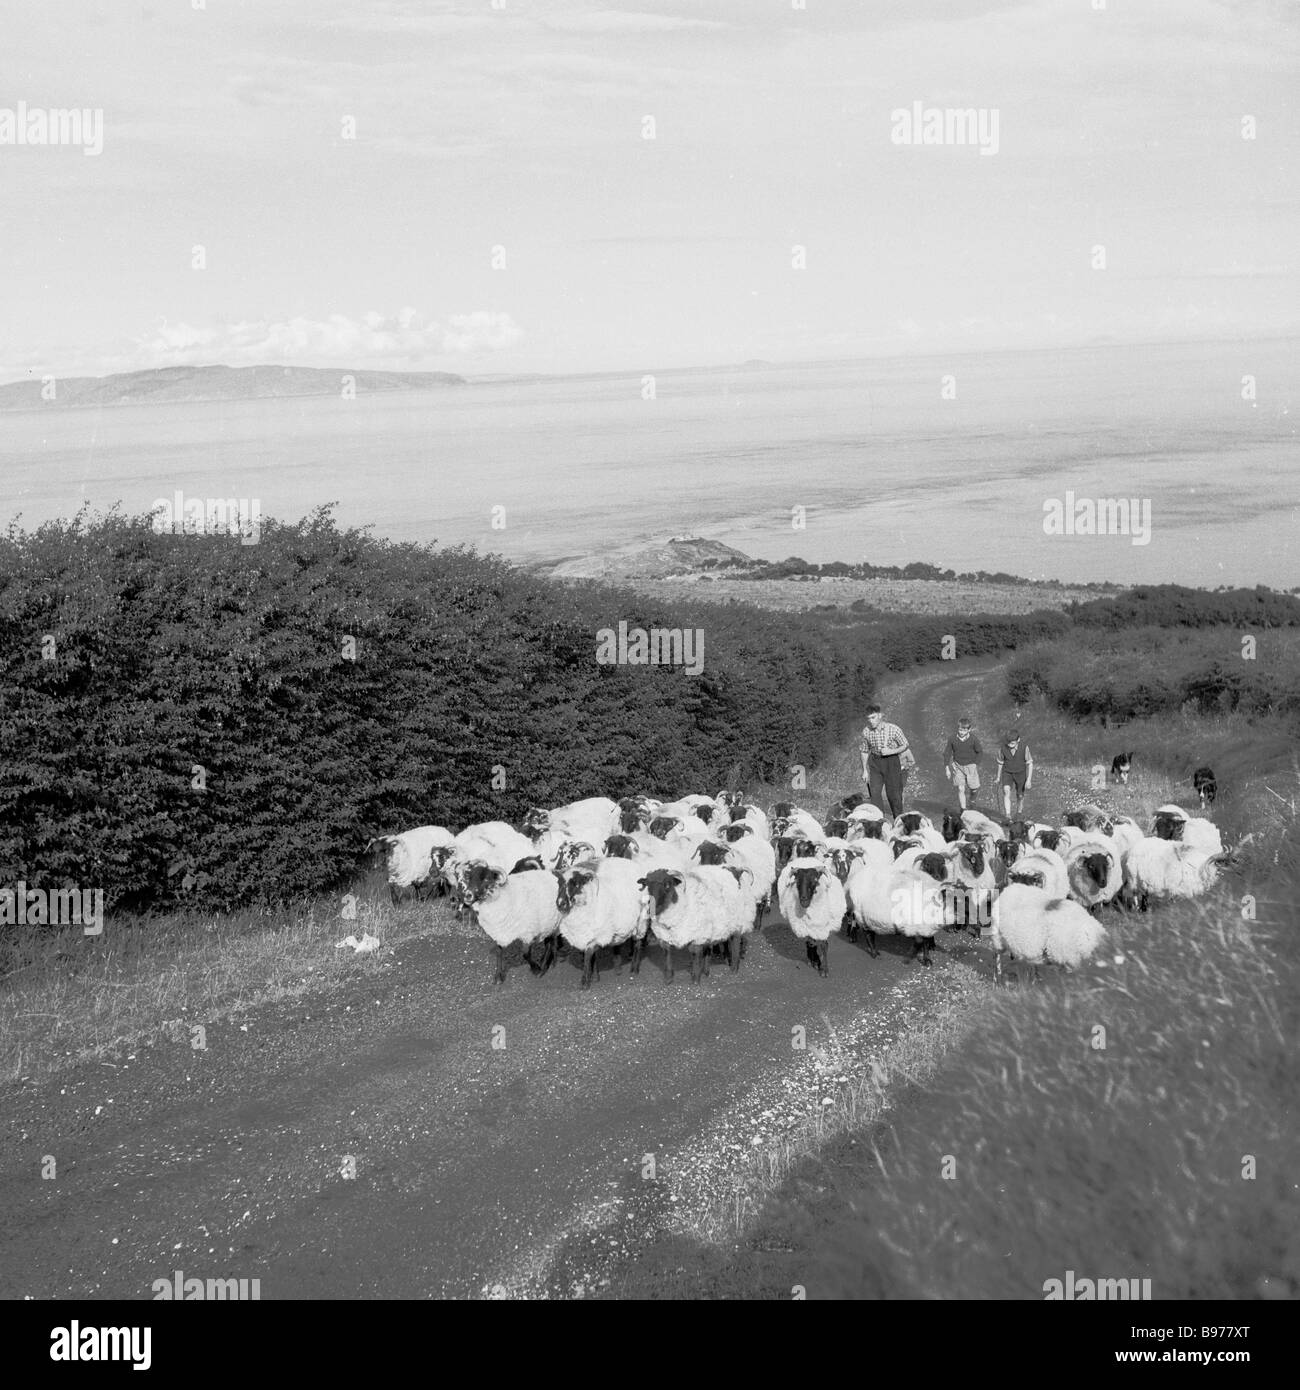 1950s, historique, un fermier et deux garçons qui menaient un troupeau de moutons noirs ont pris la tête d'une ruelle de campagne tranquille sur la côte d'Antrim, en Irlande du Nord, au Royaume-Uni. Banque D'Images